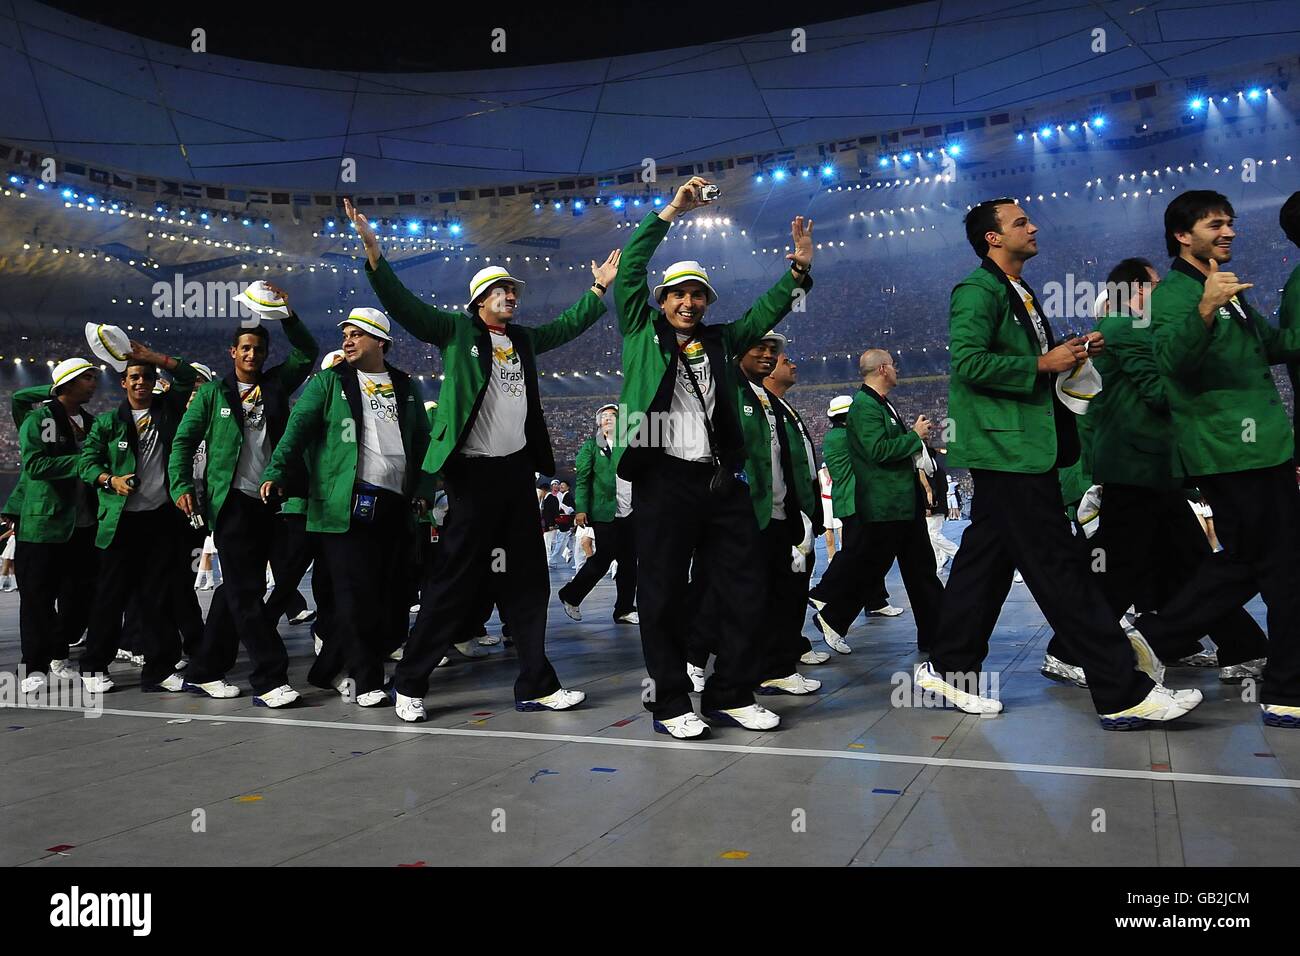 Olympische Spiele - Olympische Spiele In Peking 2008 - Eröffnungszeremonie. Das brasilianische Team bei den Olympischen Spielen 2008 in Peking. Stockfoto